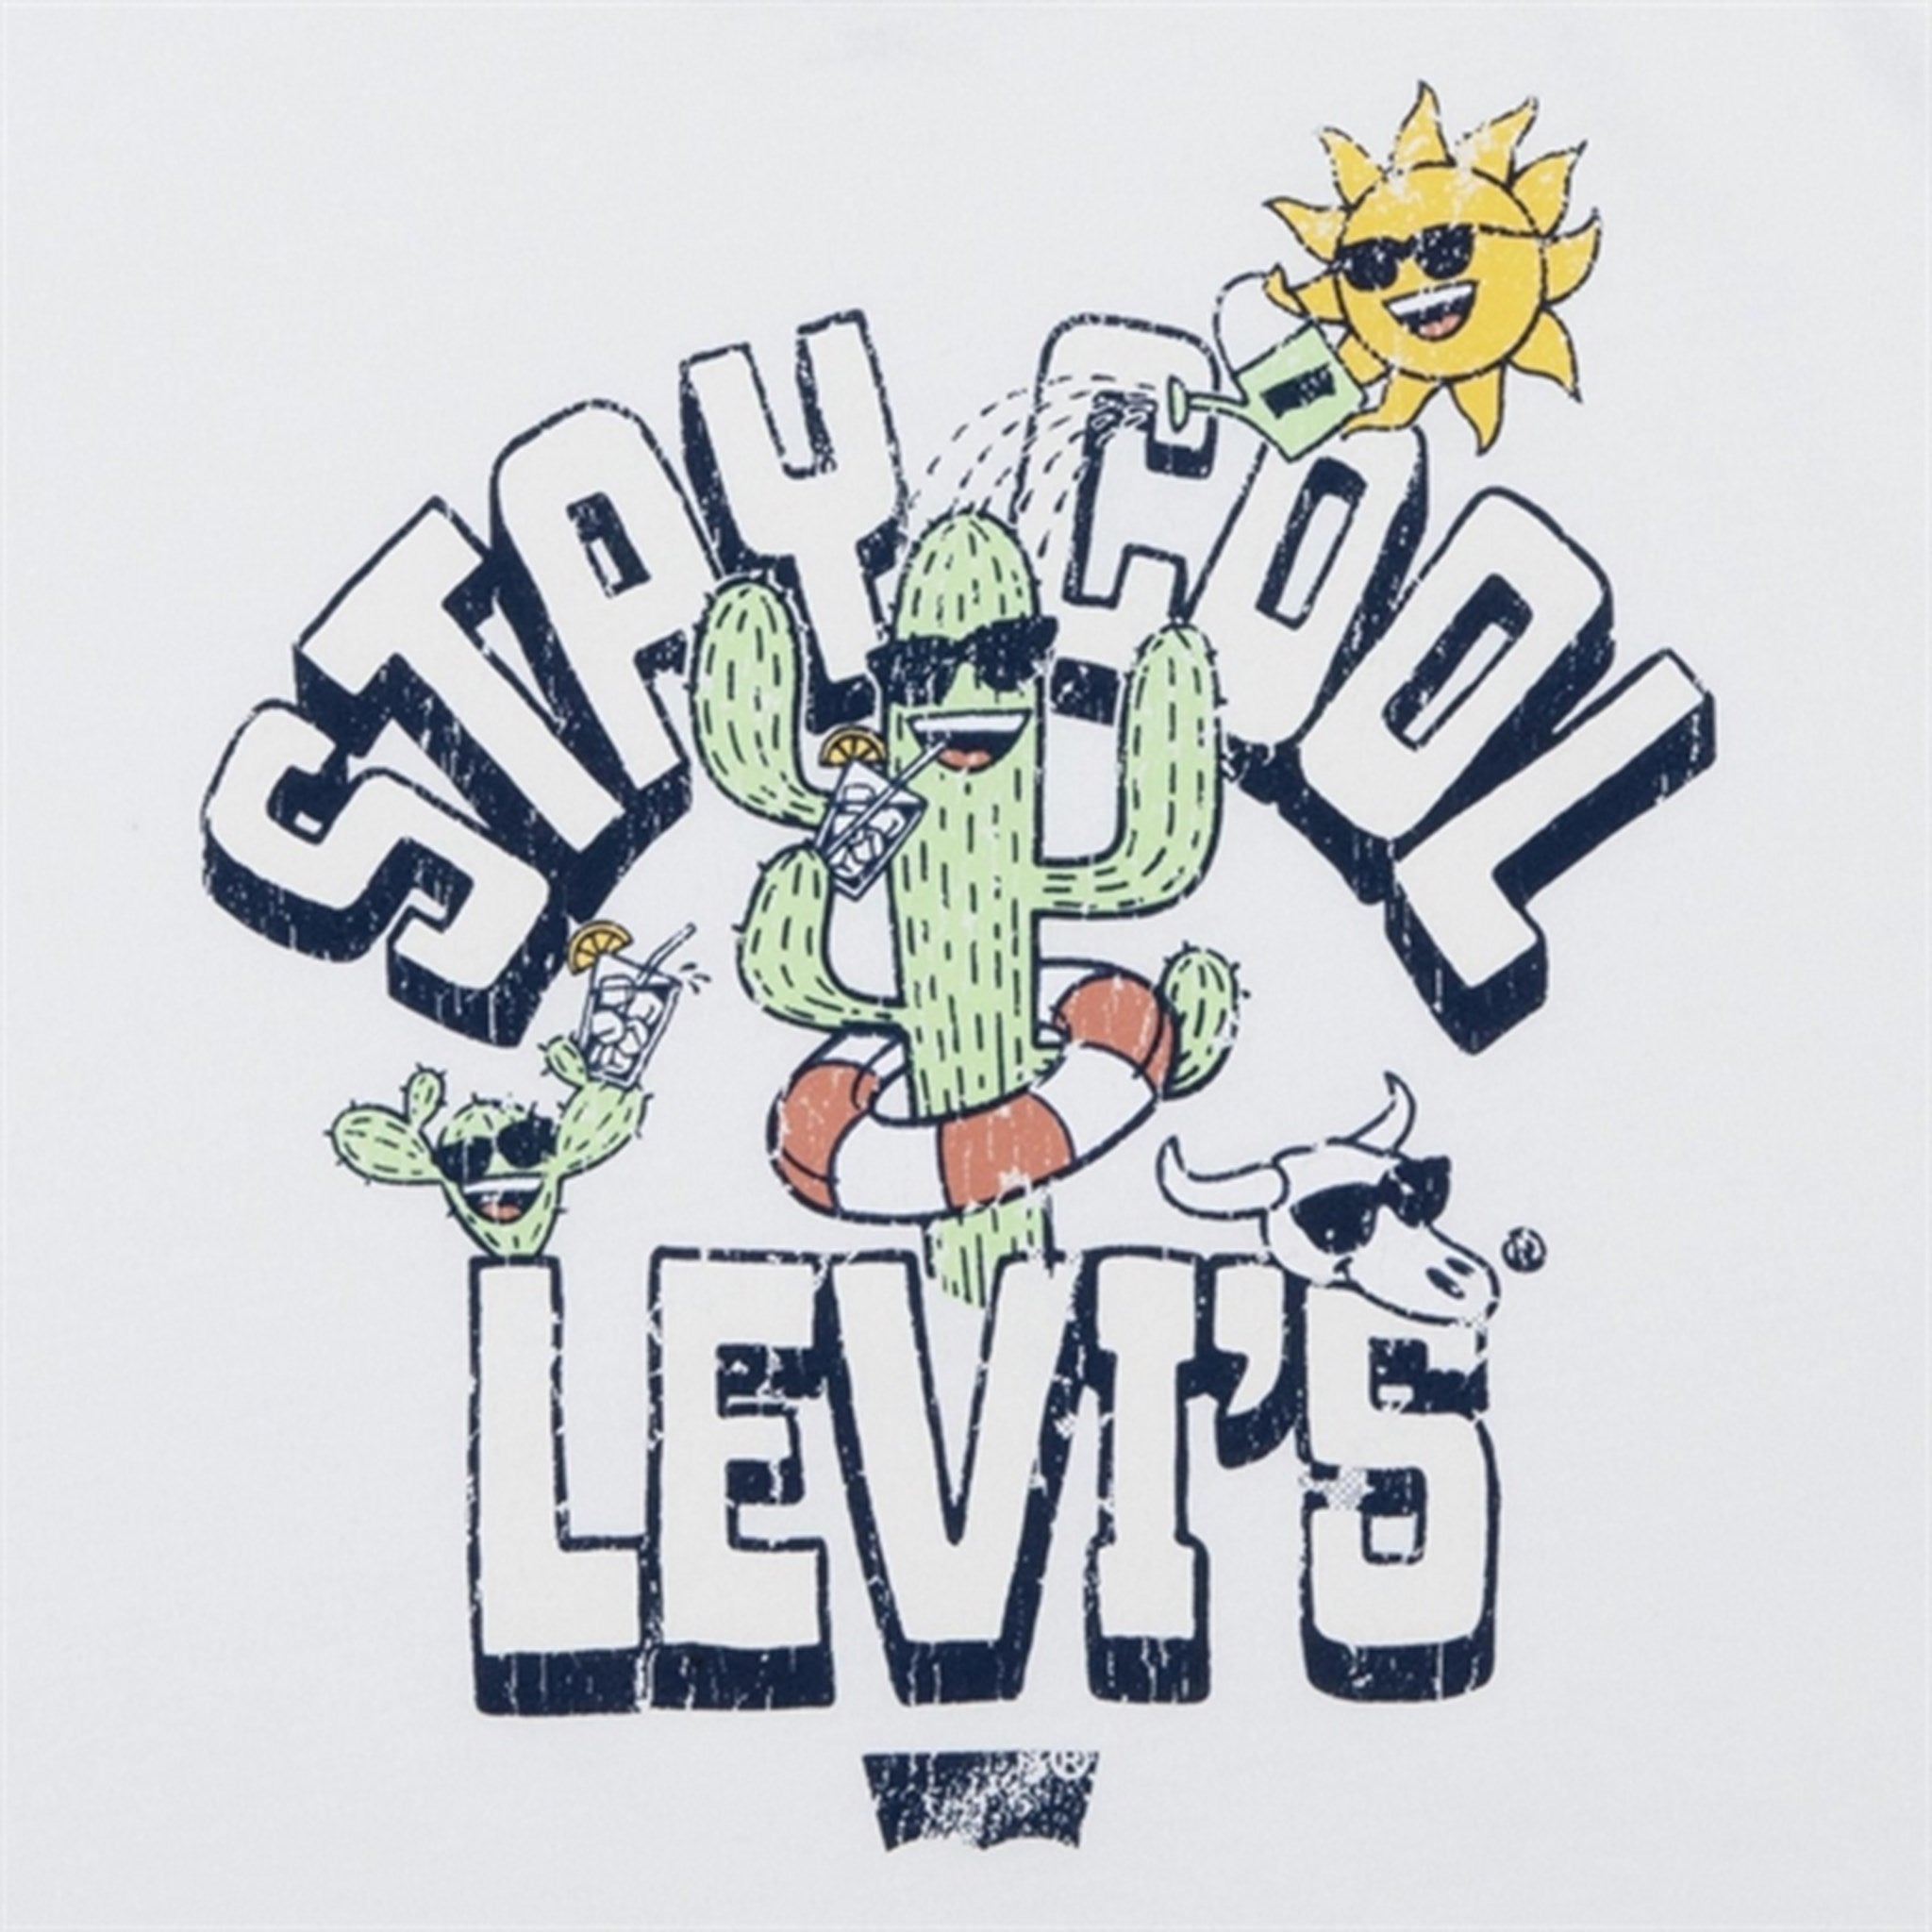 Levi's Bebis Stay Cool Levi's T-Shirt Cloud Dancer 3